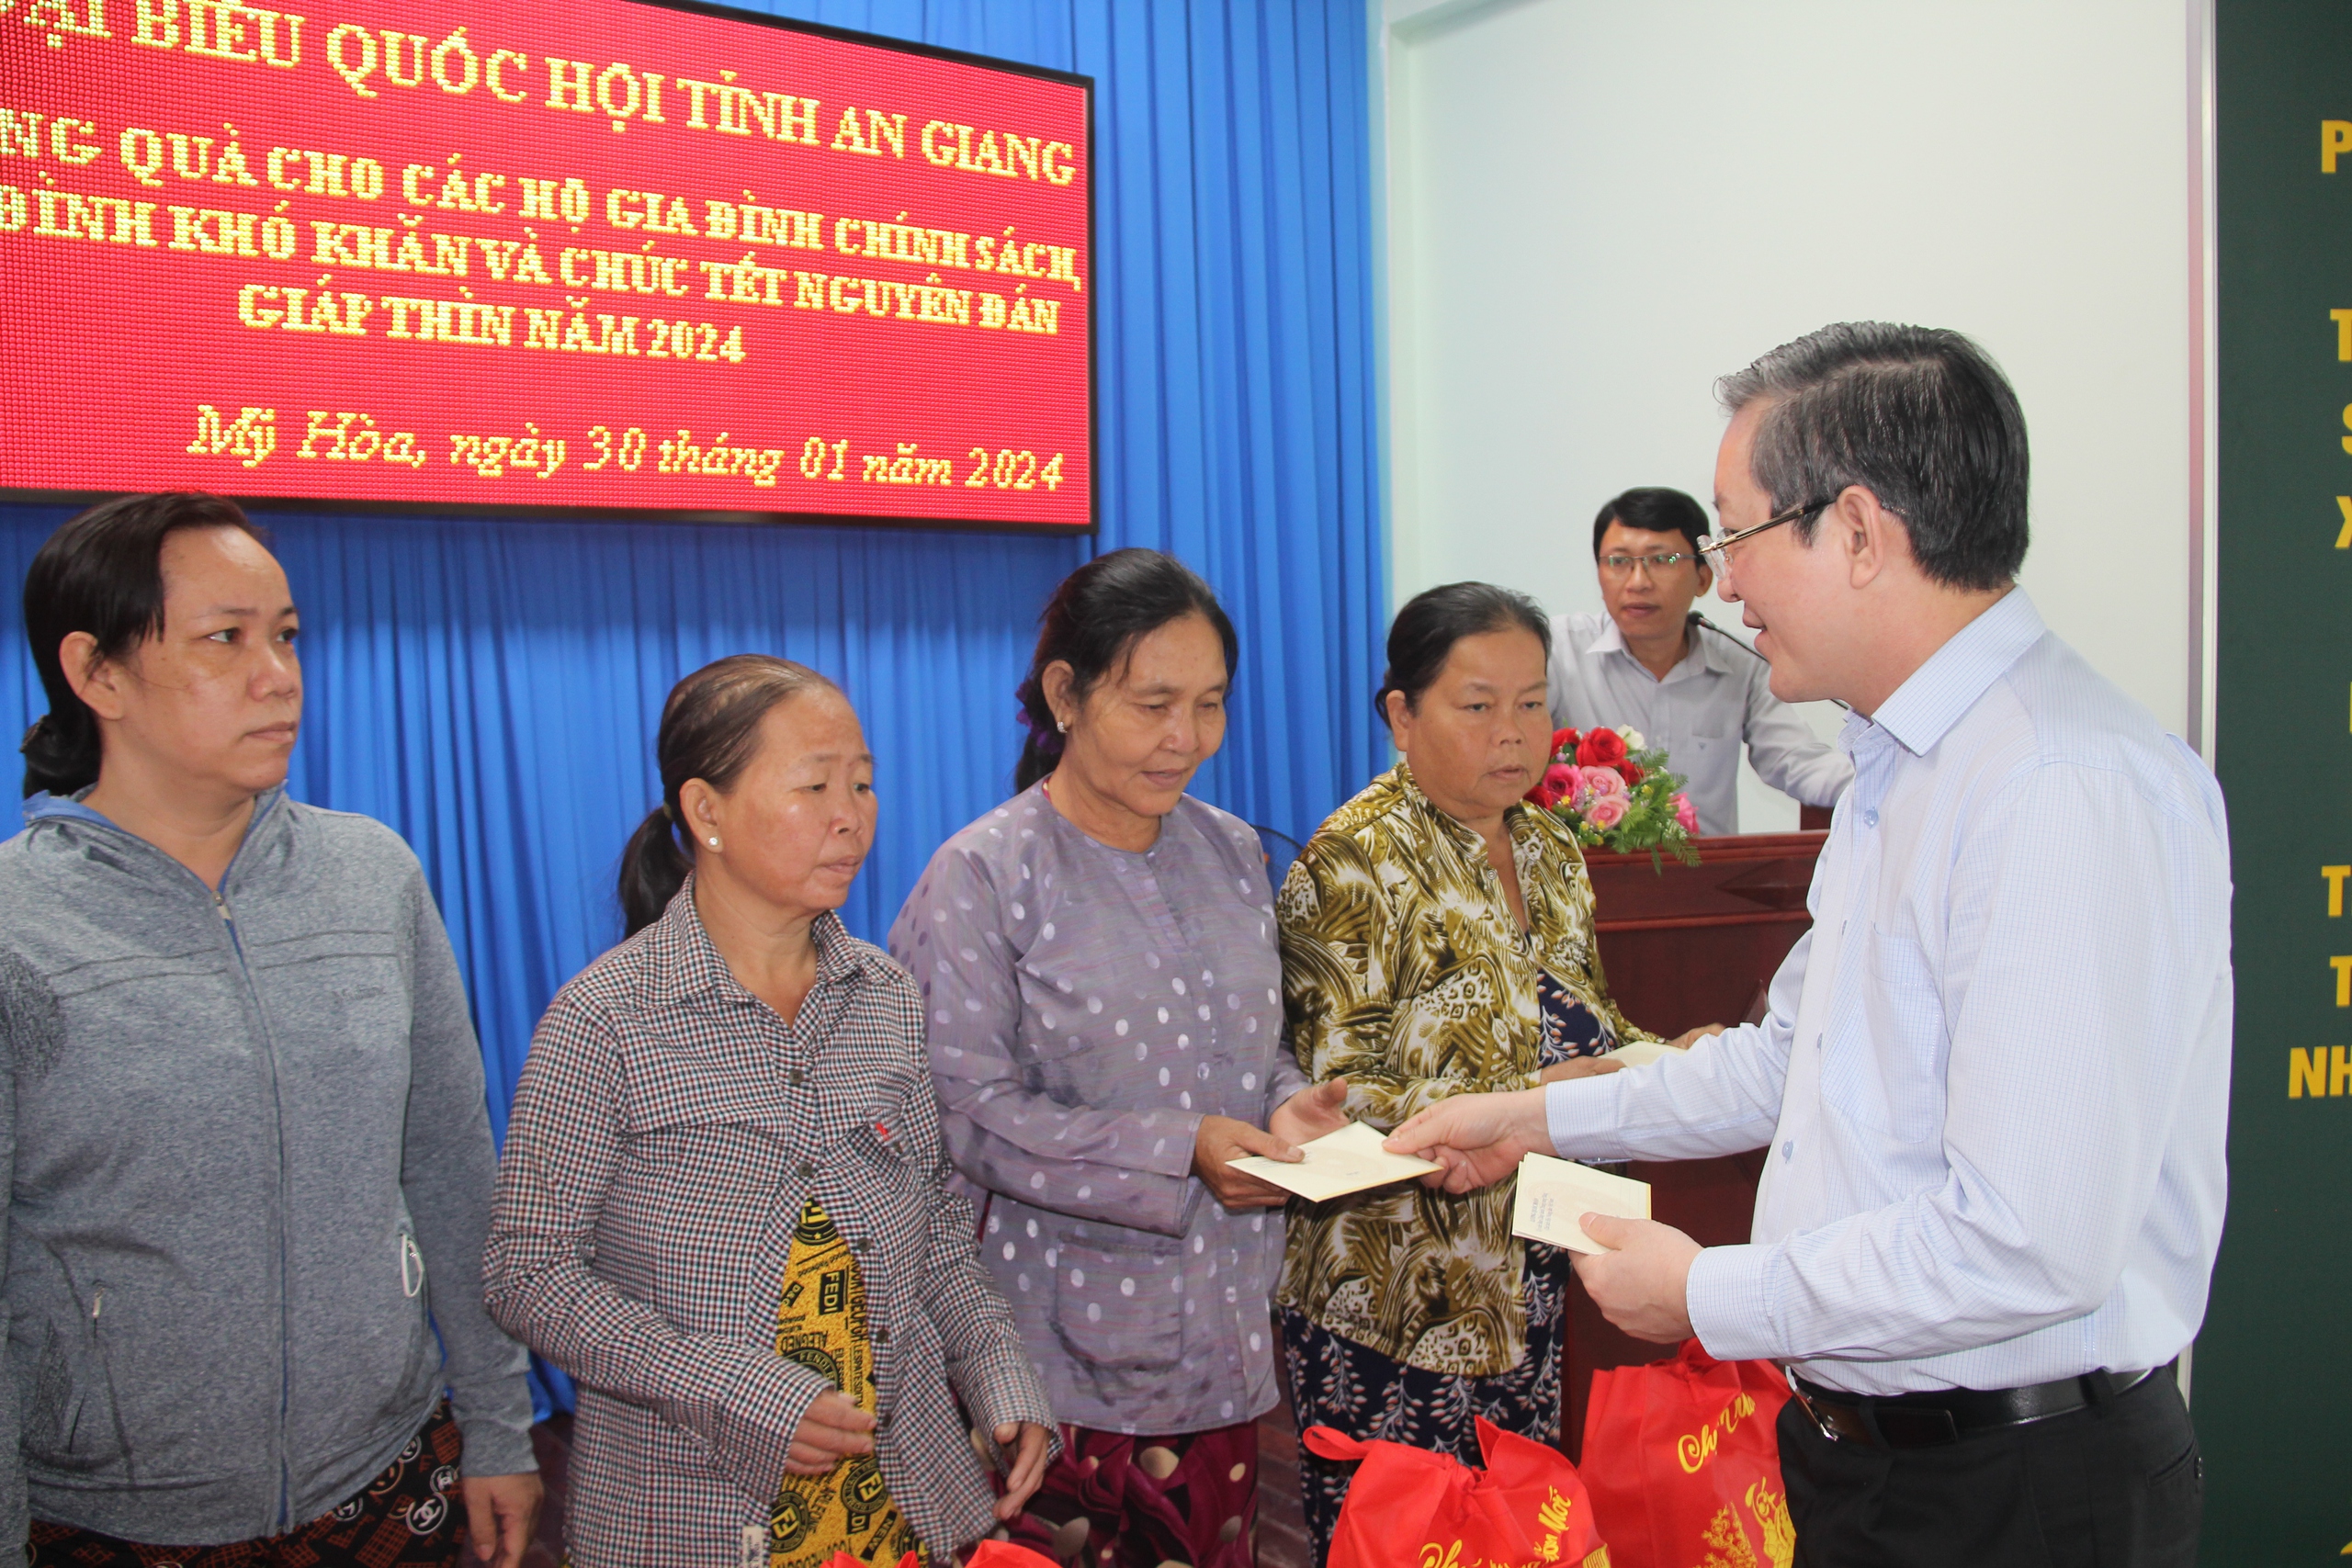 Chủ tịch Hội NDVN Lương Quốc Đoàn trao quà Tết cho người dân tại 4 địa phương của An Giang- Ảnh 8.